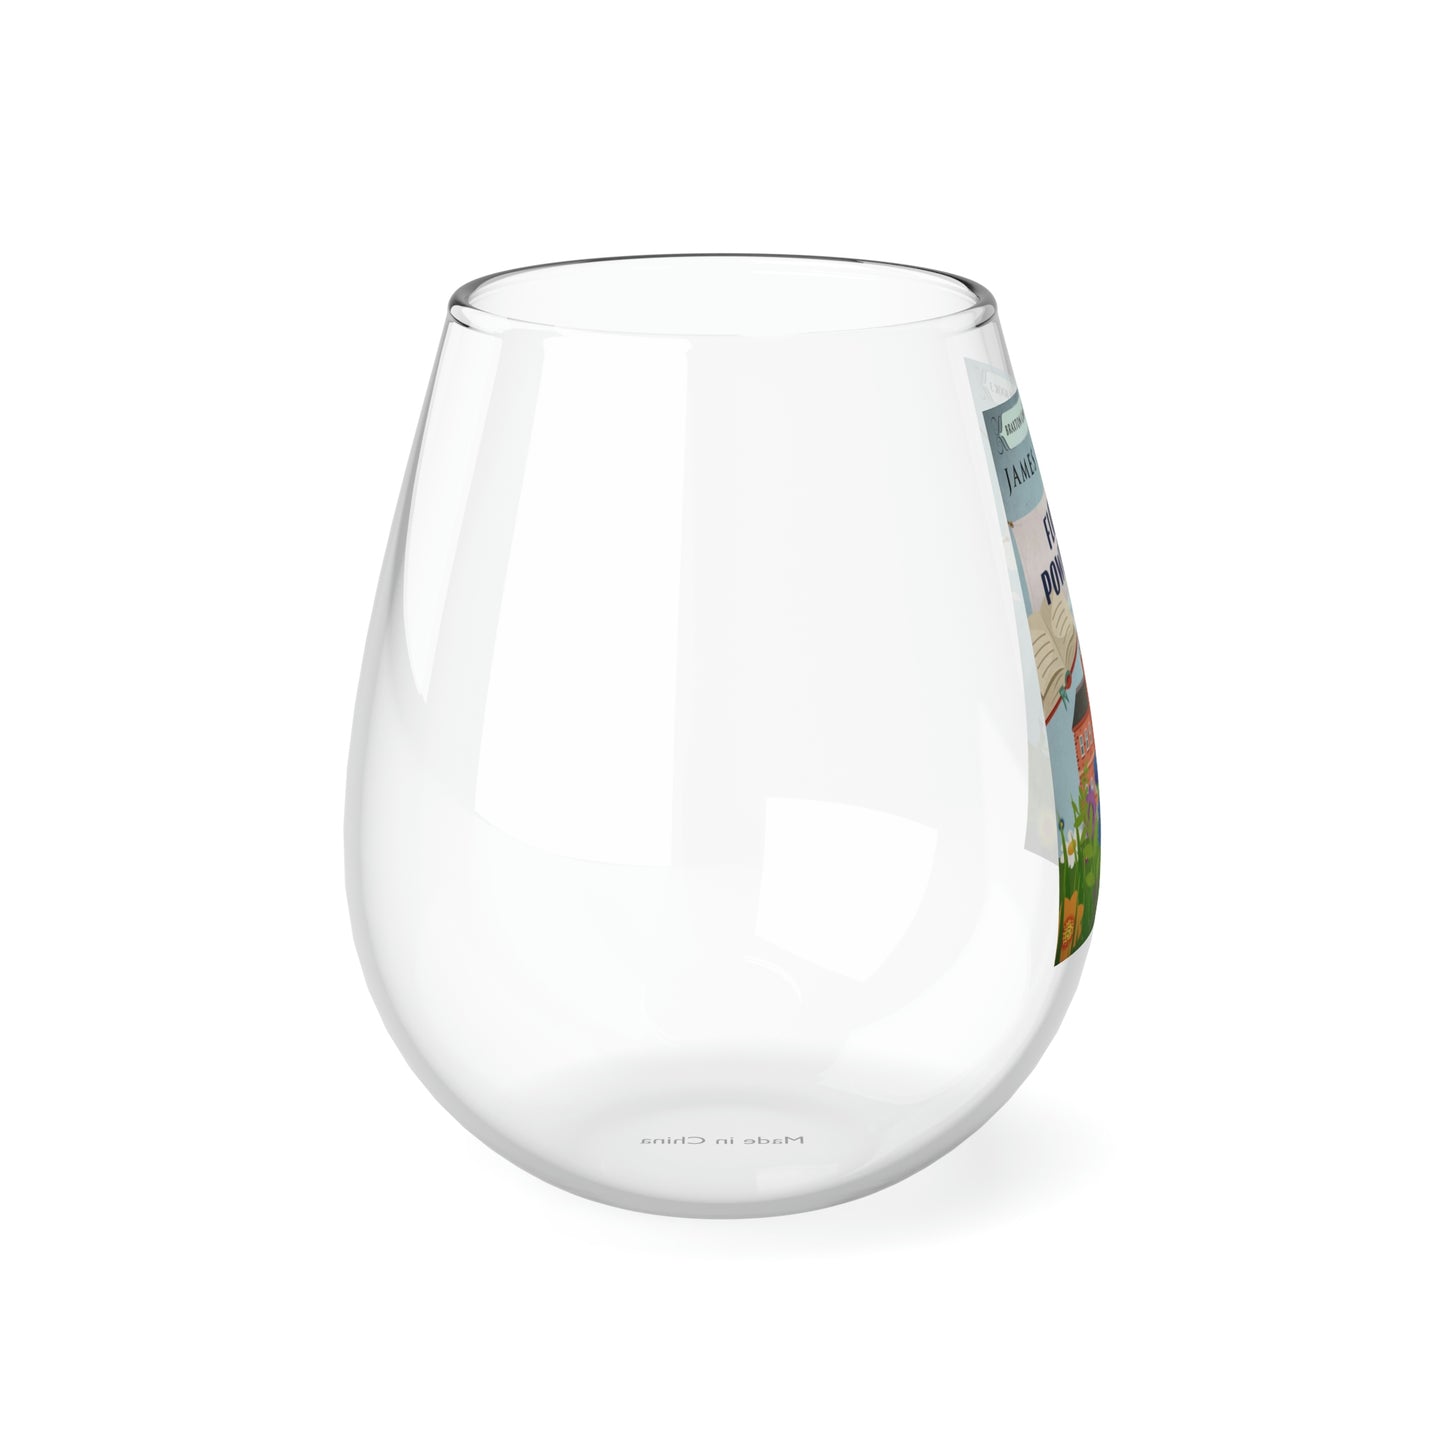 Flower Power Trip - Stemless Wine Glass, 11.75oz